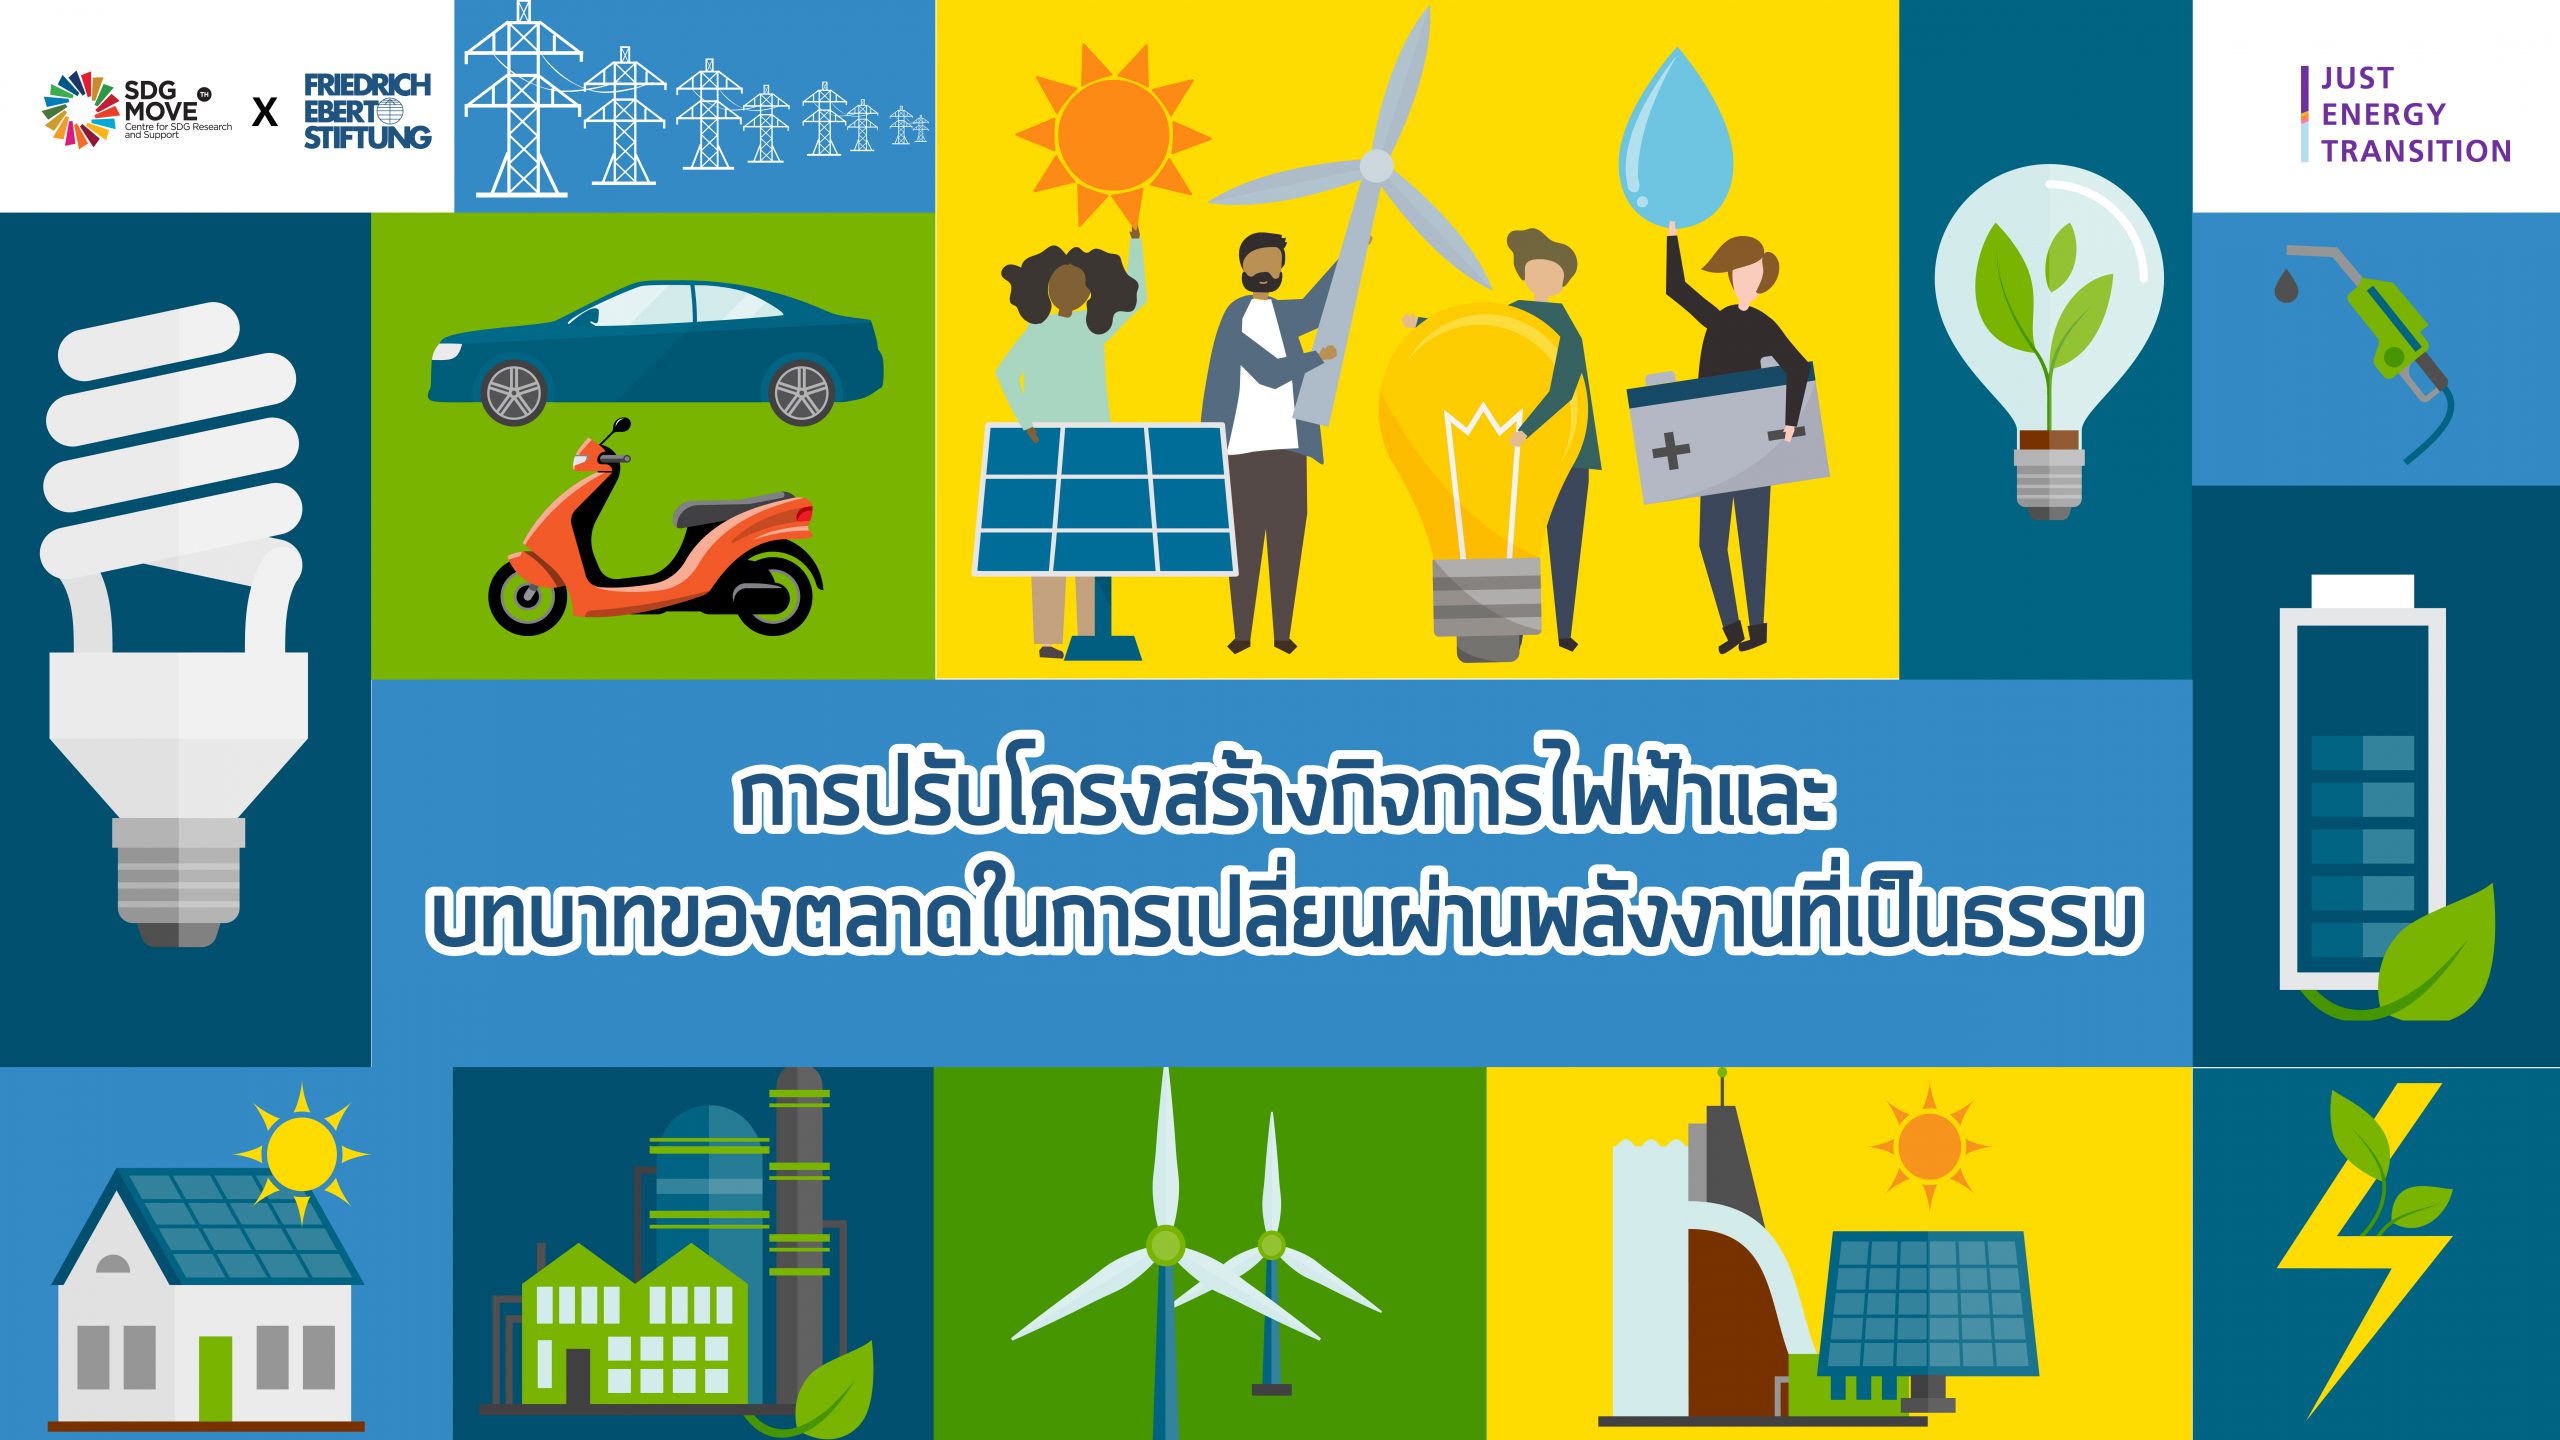 SDG Updates | การปรับโครงสร้างกิจการไฟฟ้าและบทบาทของตลาดในการเปลี่ยนผ่านพลังงานที่เป็นธรรม (EP.12)